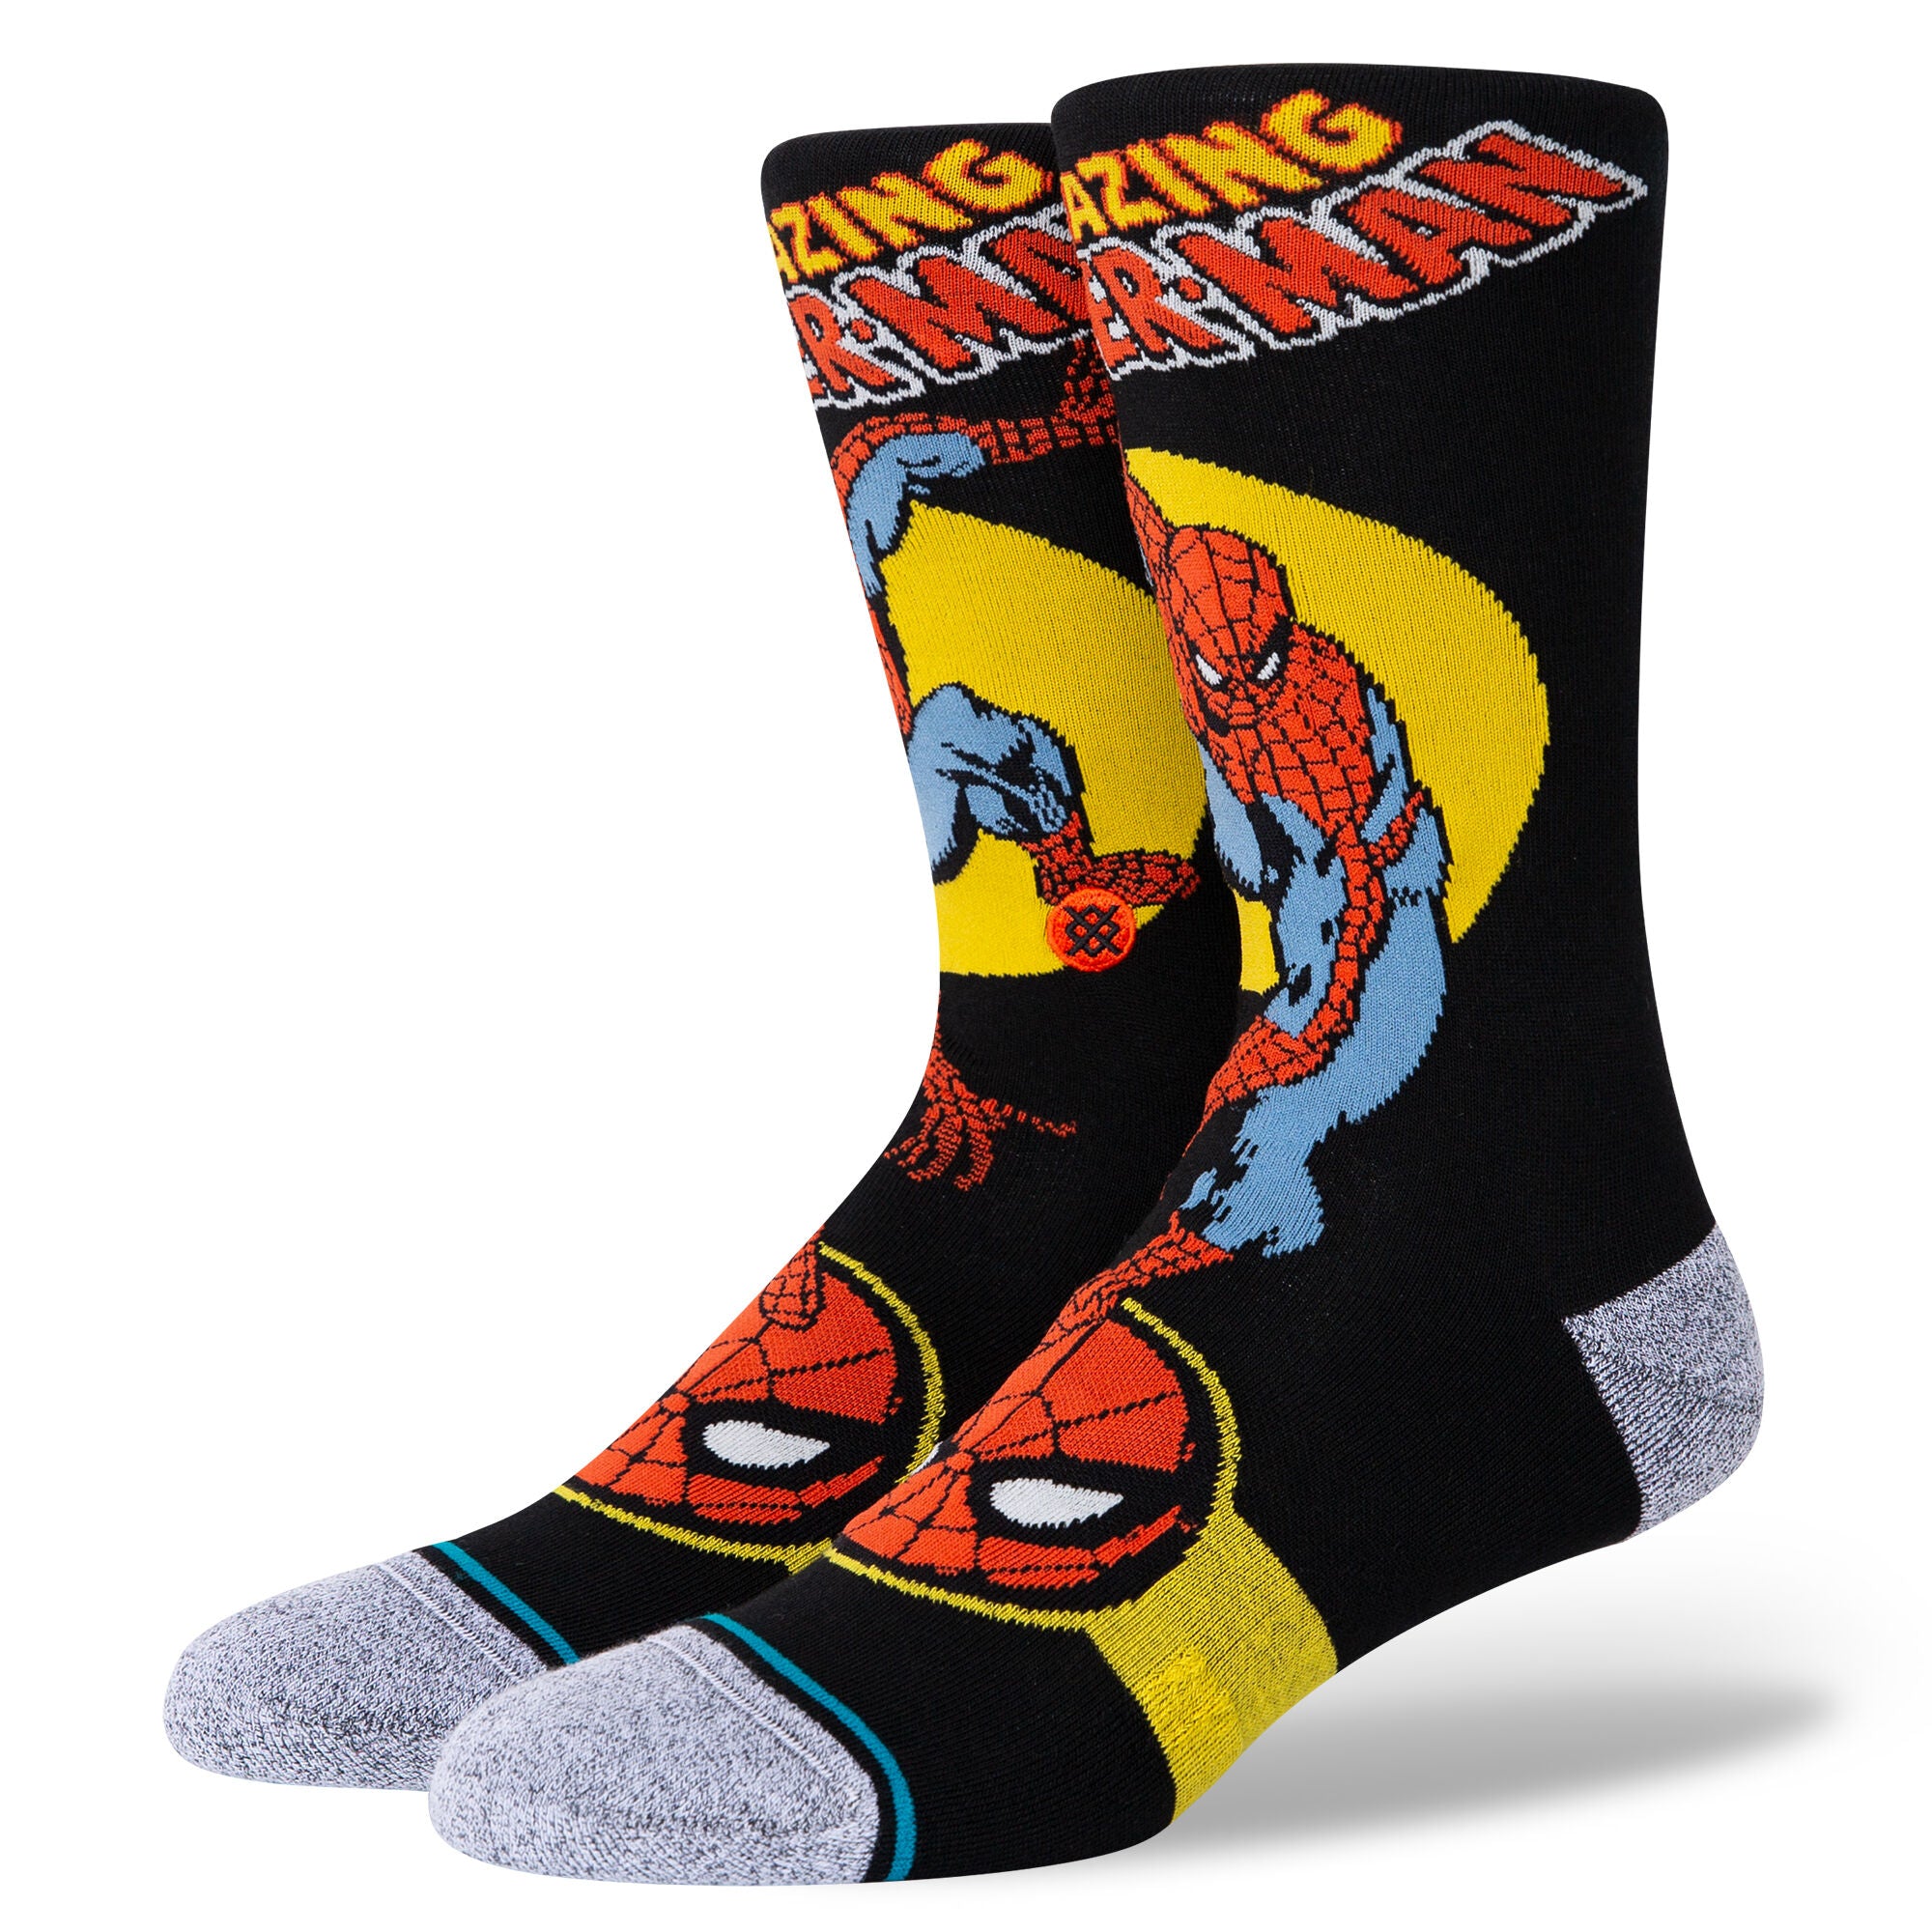 Marvel Heroes Crew Socks  America socks, Marvel clothes, Superhero socks